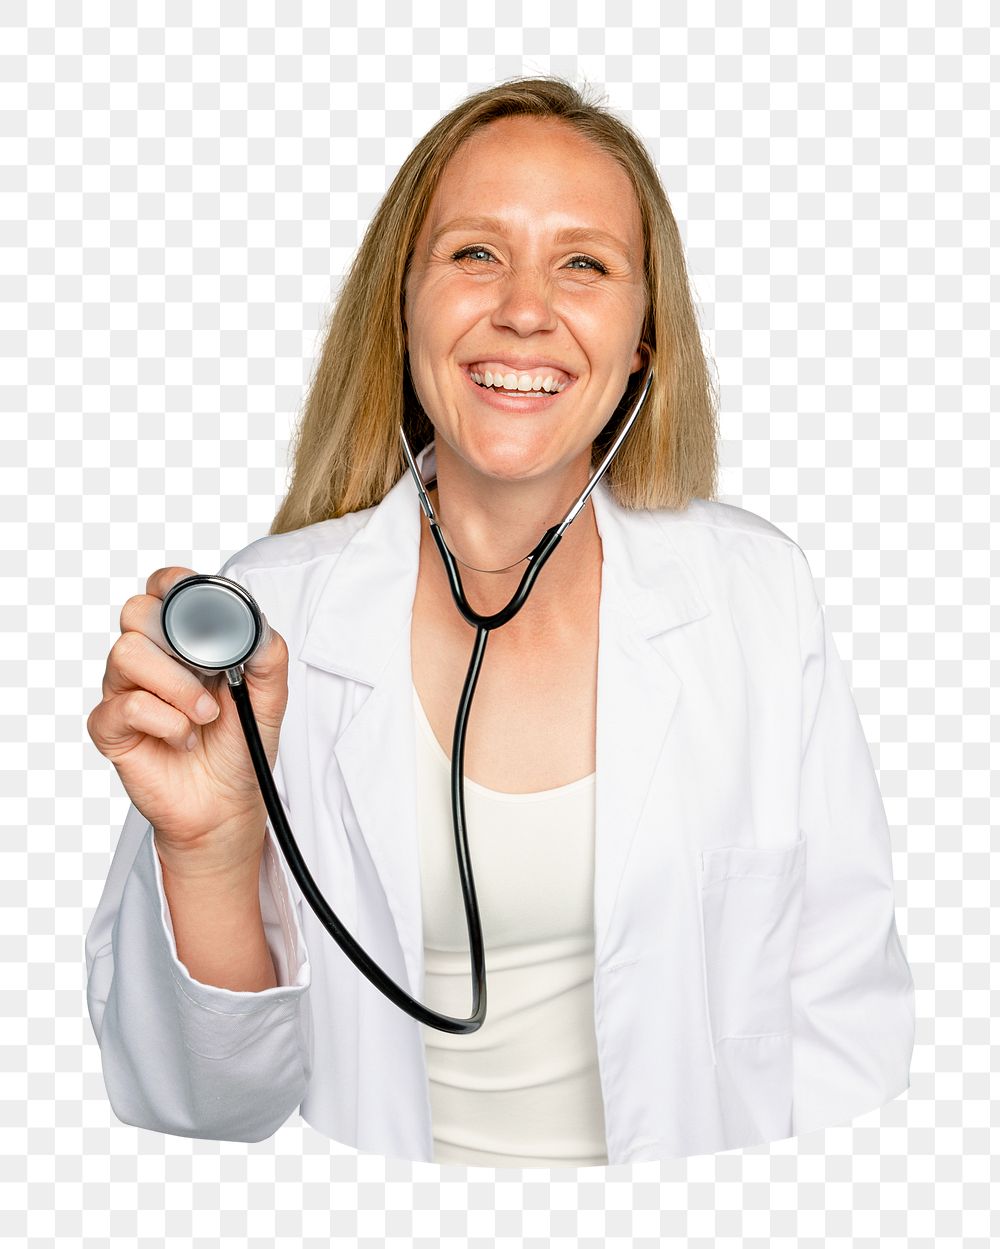 Smiling doctor png sticker, transparent background